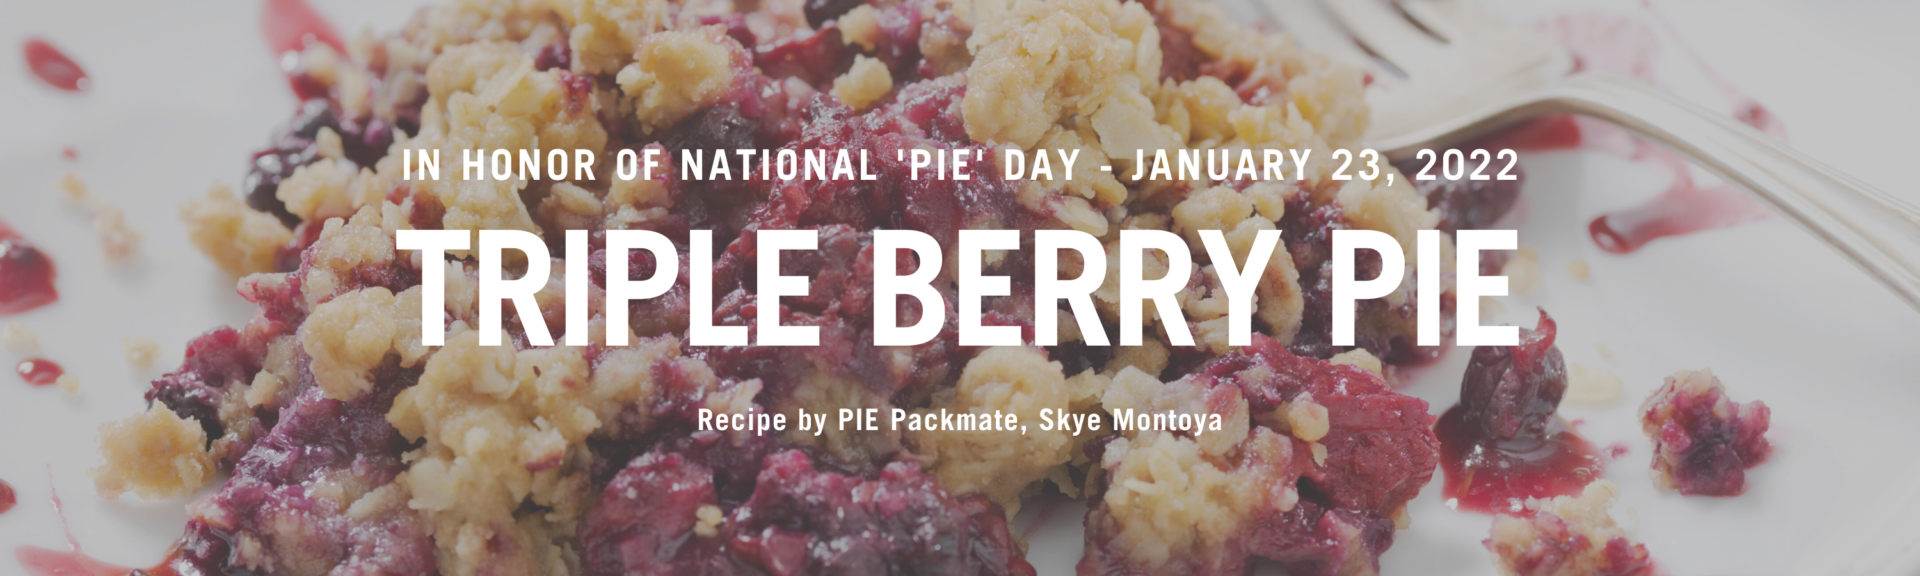 National PIE Day - Triple Berry PIE